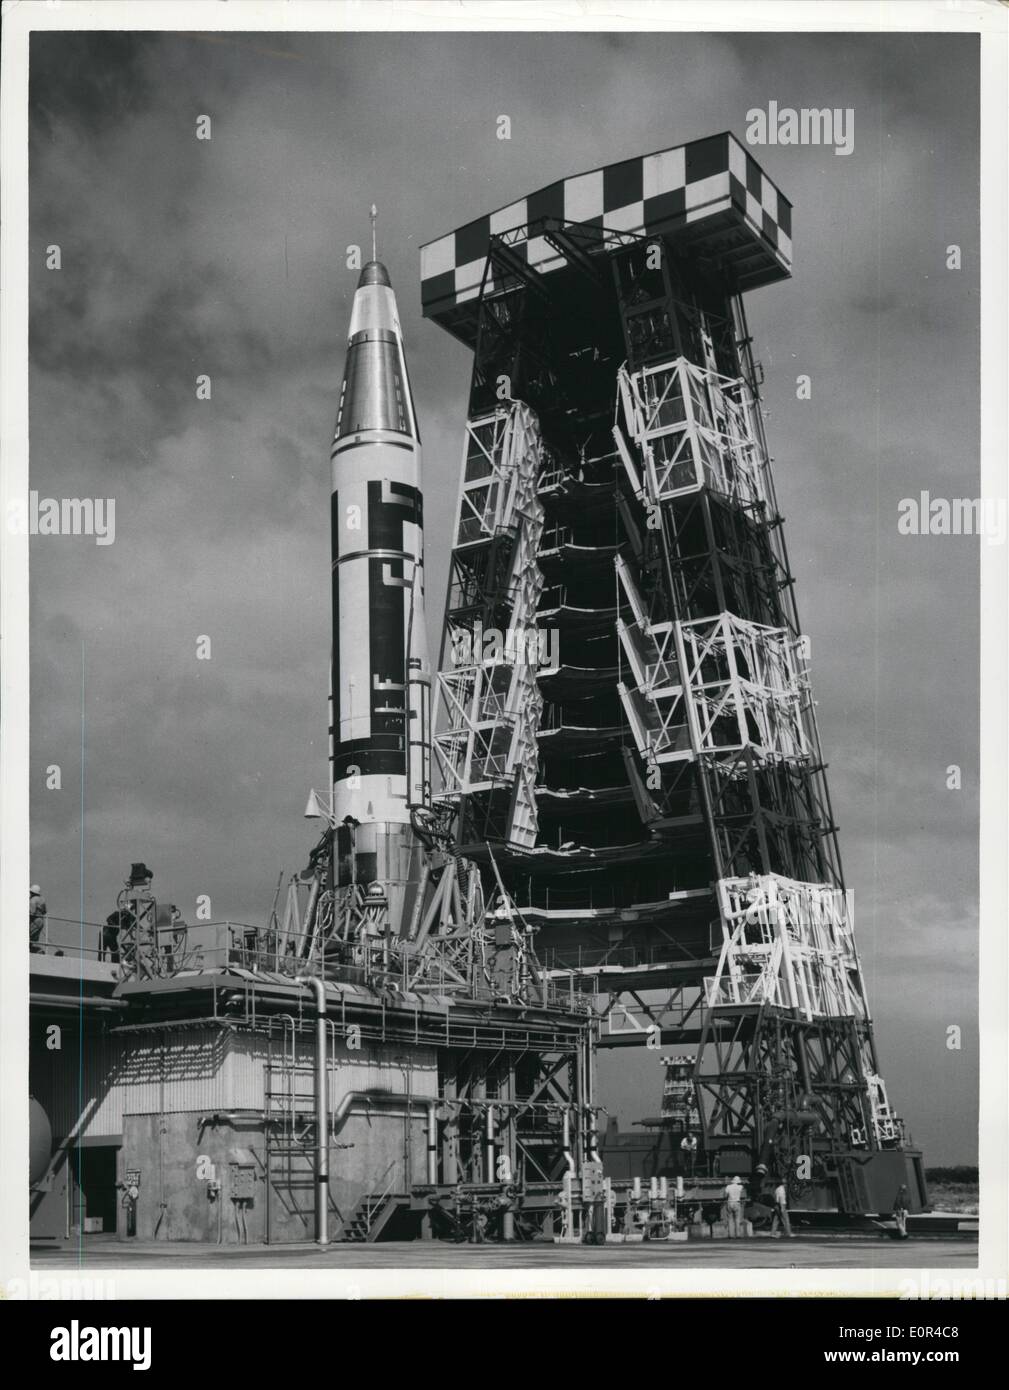 Febrero 02, 1958 - Primer acercamiento de Atlas: En esta foto publicado por la Fuerza Aérea de EE.UU. A., El Atlas de misiles balísticos intercontinentakl está clara en su plataforma de lanzamiento en el centro de ensayos de misiles de la Fuerza Aérea de Cabo Cañaveral, Florida, el estativo torre utilizada en la preparación de la gran ''pájaro'' para el vuelo se hizo rodar desde el lanzamiento de pie. Plataformas de trabajo instalada en niveles normales en el centro de la torre de plegar hacia arriba antes de que el estativo se mueva hacia atrás desde el pad. Lanzador de misiles armas sujetando el estabilizar y amarre la Atals durante la última alimentando y ngine contacto Foto de stock